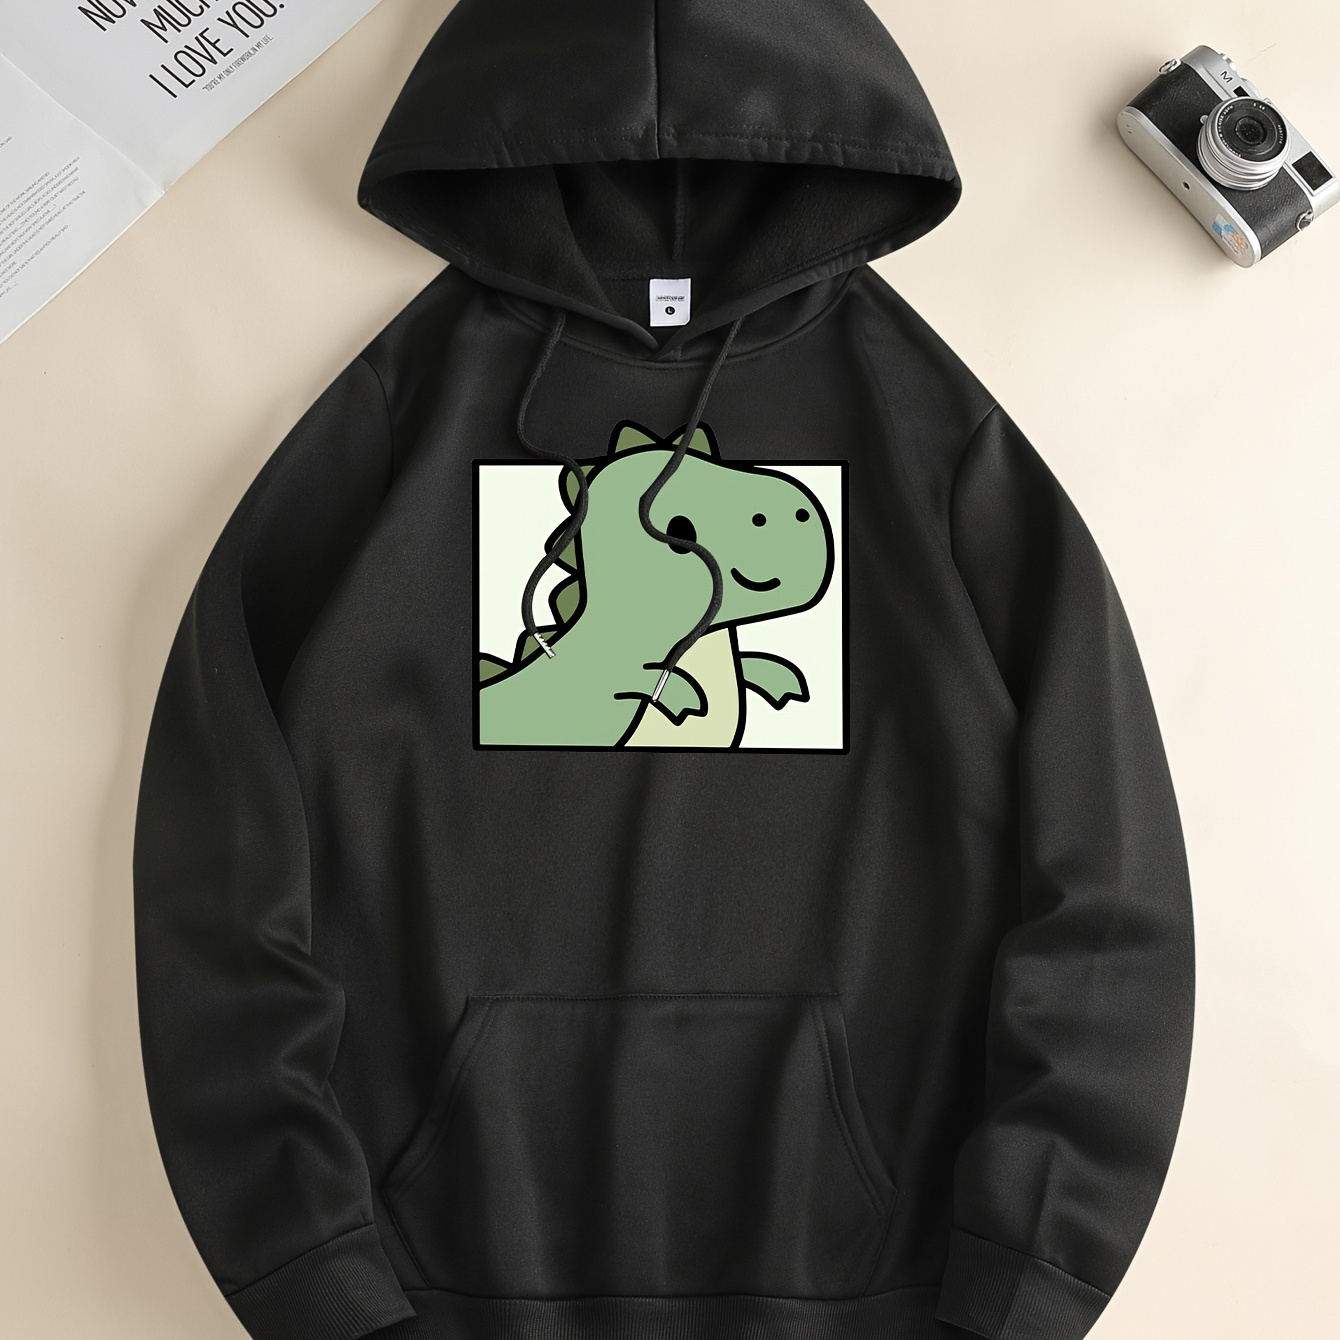 

Dinosaur Print Kangaroo Pocket Hoodie, Casual Long Sleeve Hoodies Sweatshirt, Men's Clothing, For Fall Winter